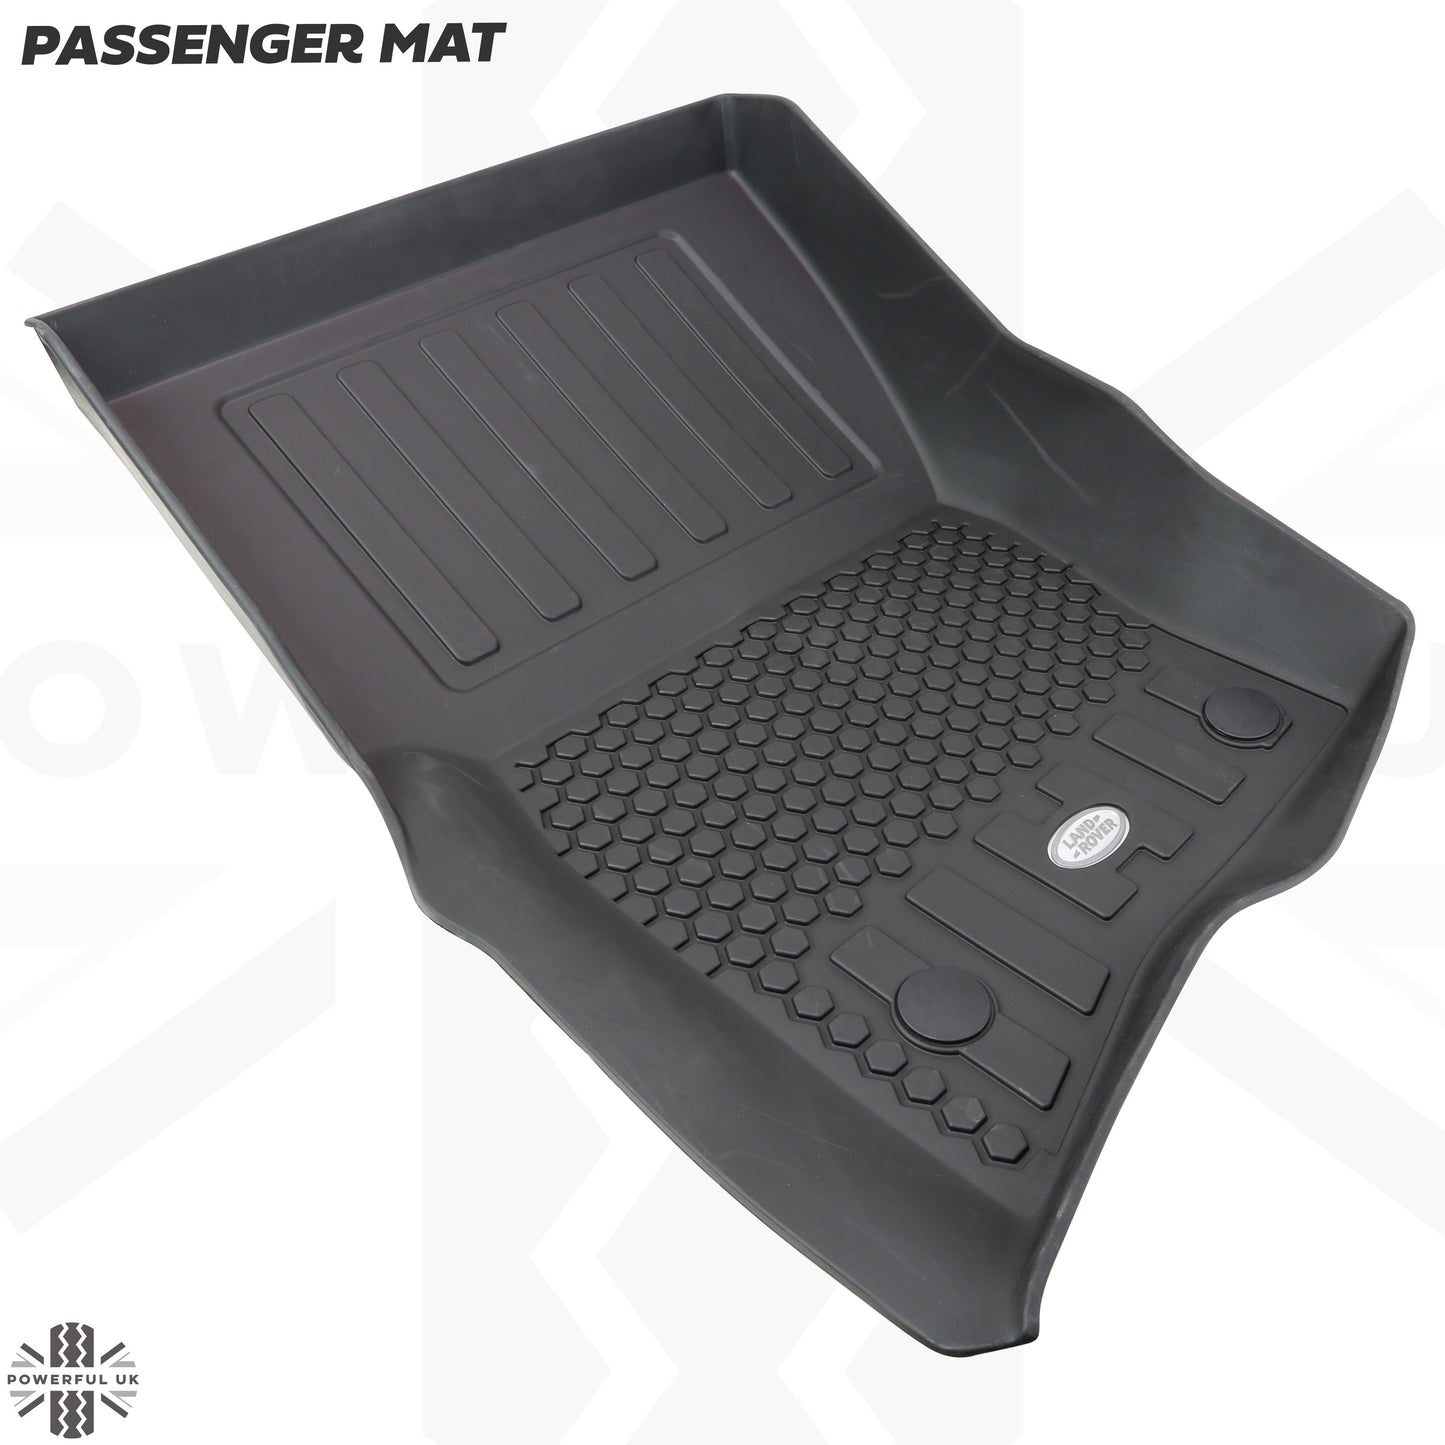 Rubber Floor Mat Set - Genuine - for Land Rover Defender L663(110 models) - RHD - 5 seat